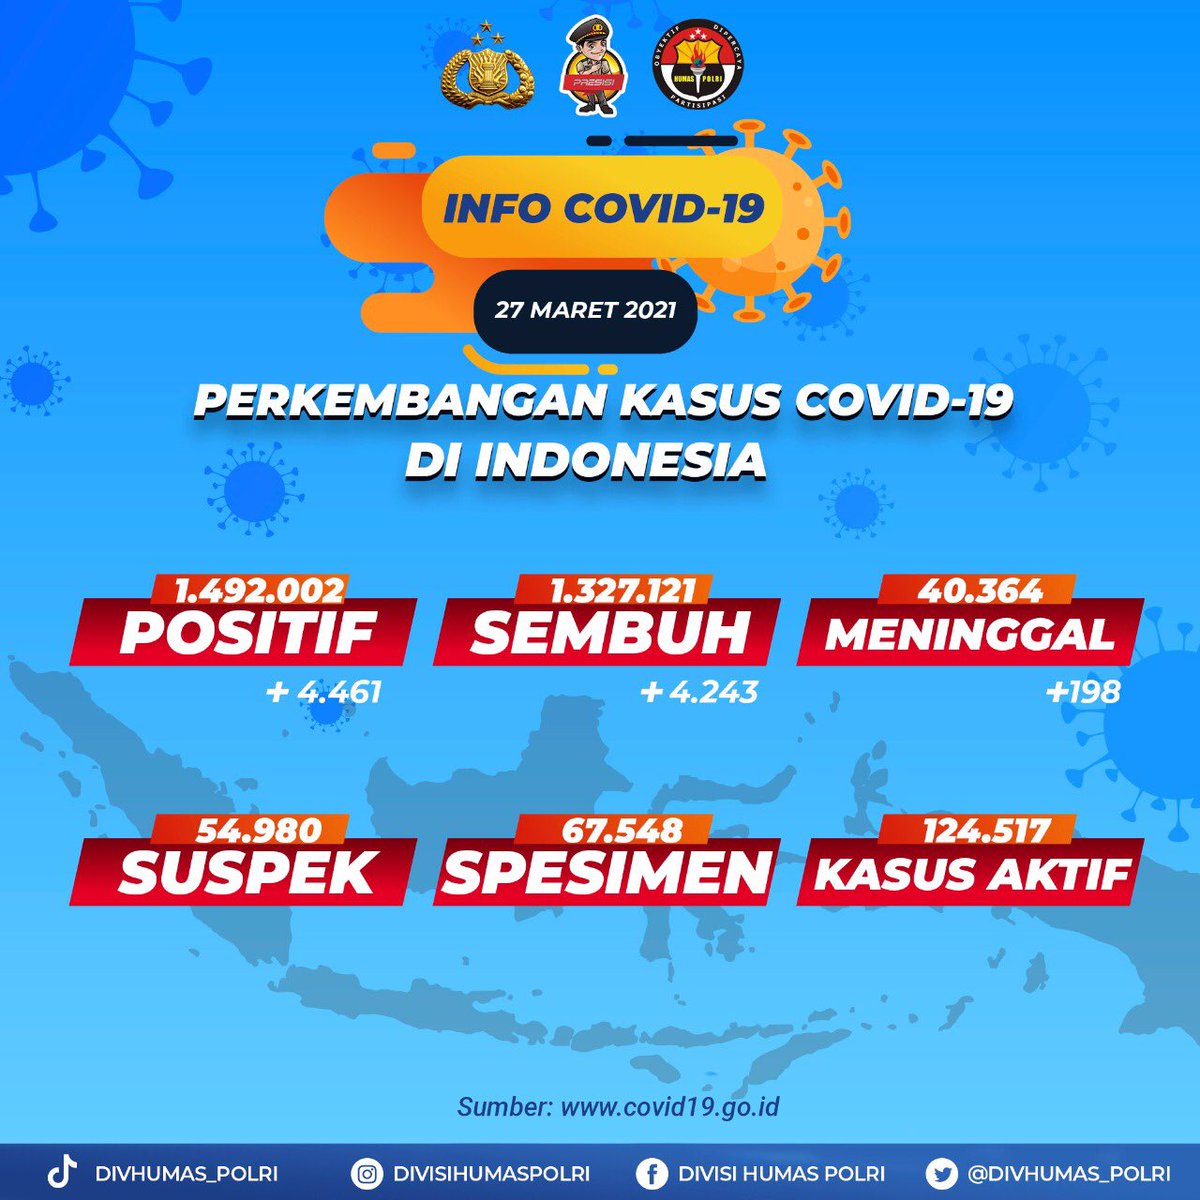 Sobat Polri, perkembangan data kasus positif Covid-19 di Indonesia semakin bertambah ayo kita tetap patuhi protokol kesehatan dan saling mengingatkan. #Covid_19